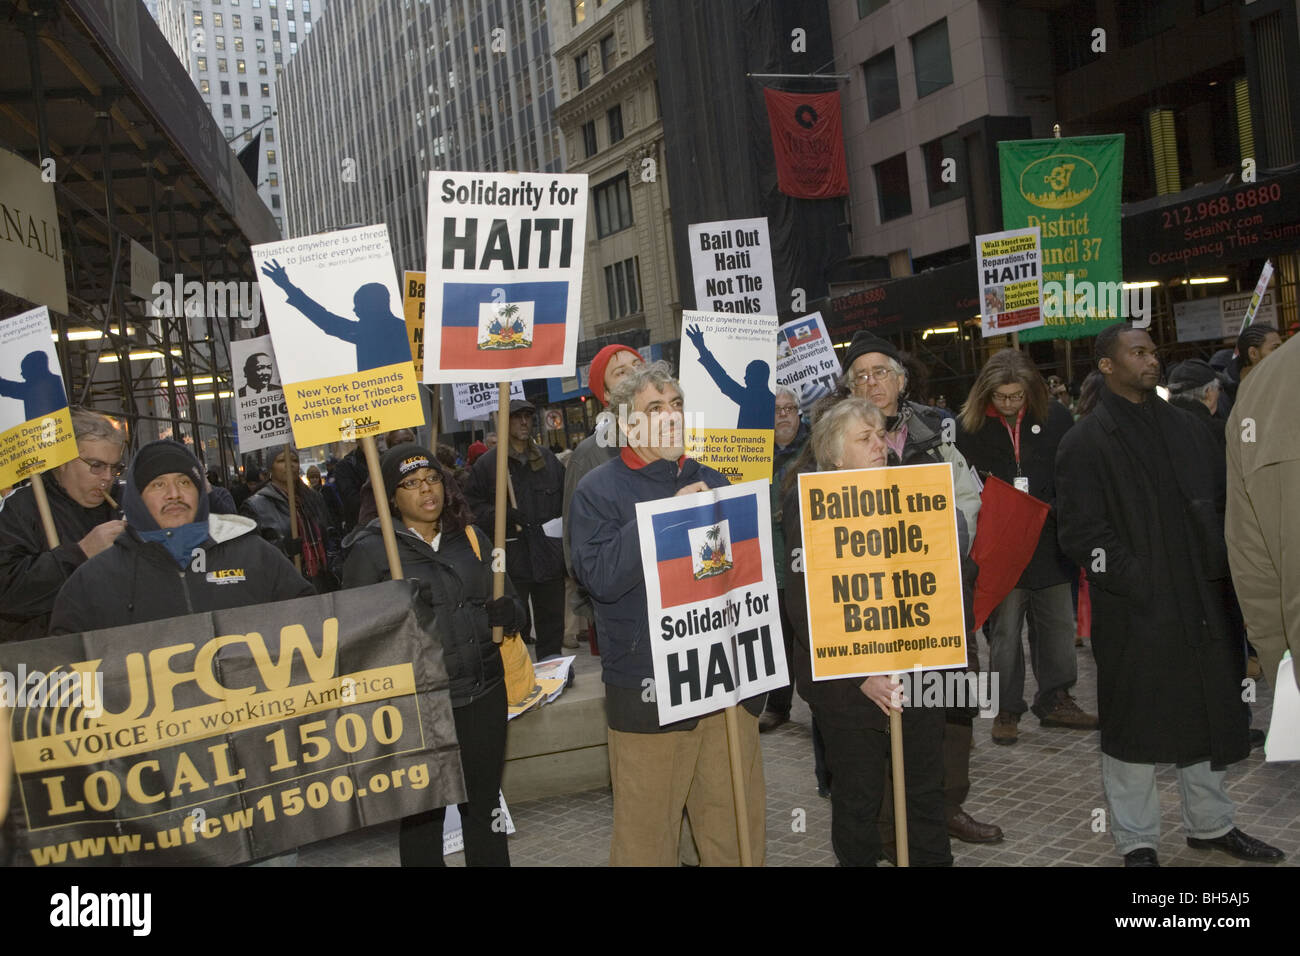 Rally an der Wall Street sagen die US-Regierung zur Rettung von Menschen auf verschiedene Weise nicht die Banken. Stockfoto